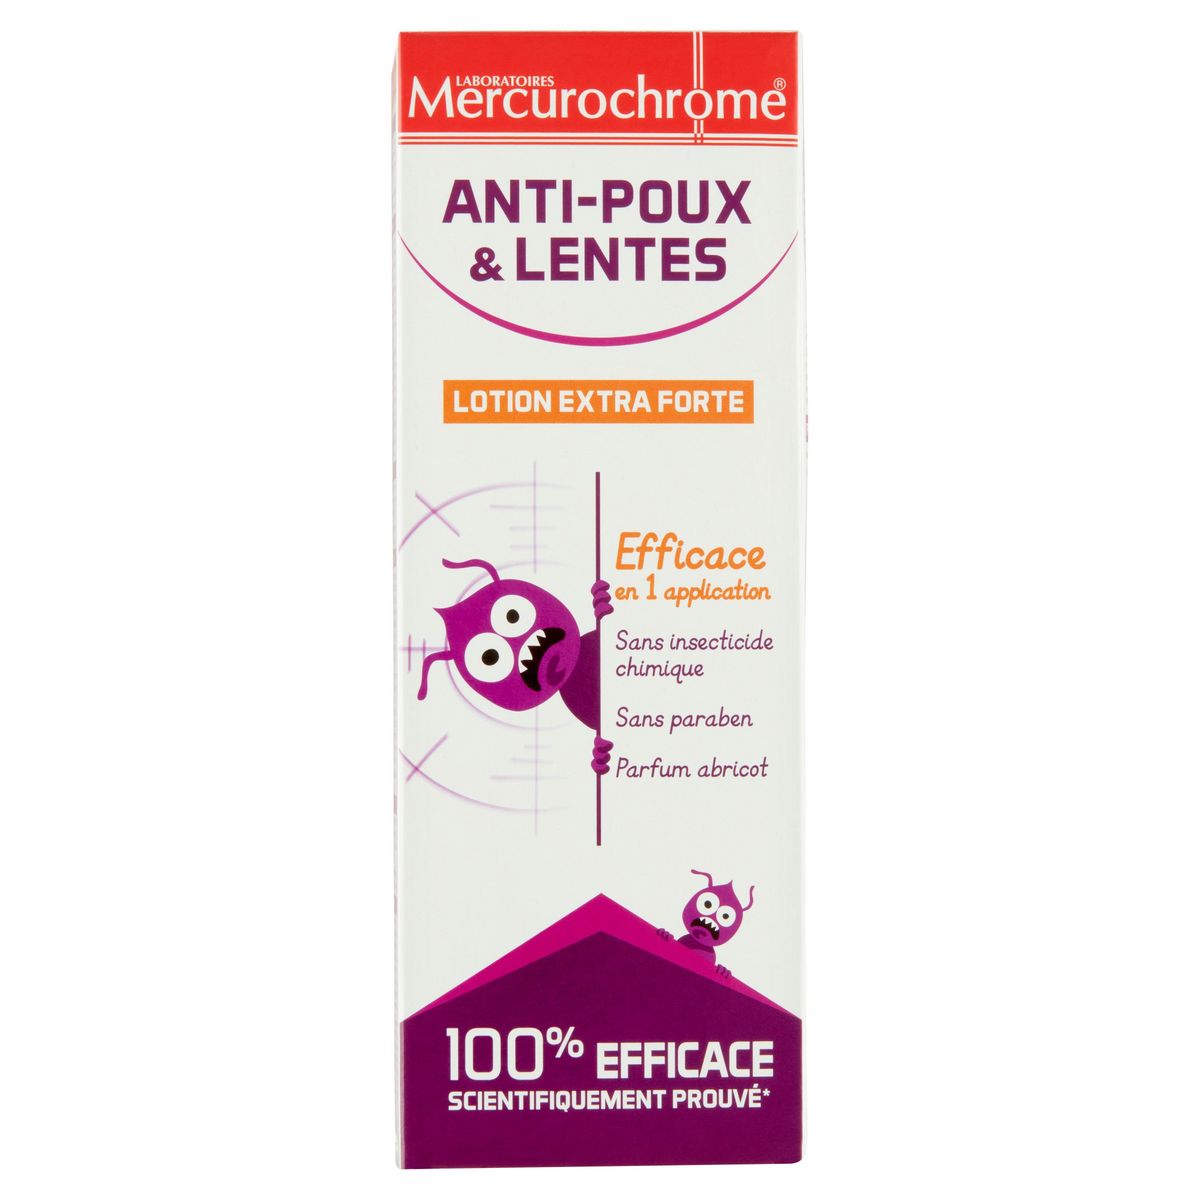 Laboratoires Mercurochrome Anti-Poux Lentes Lotion Extra Forte 100 ml